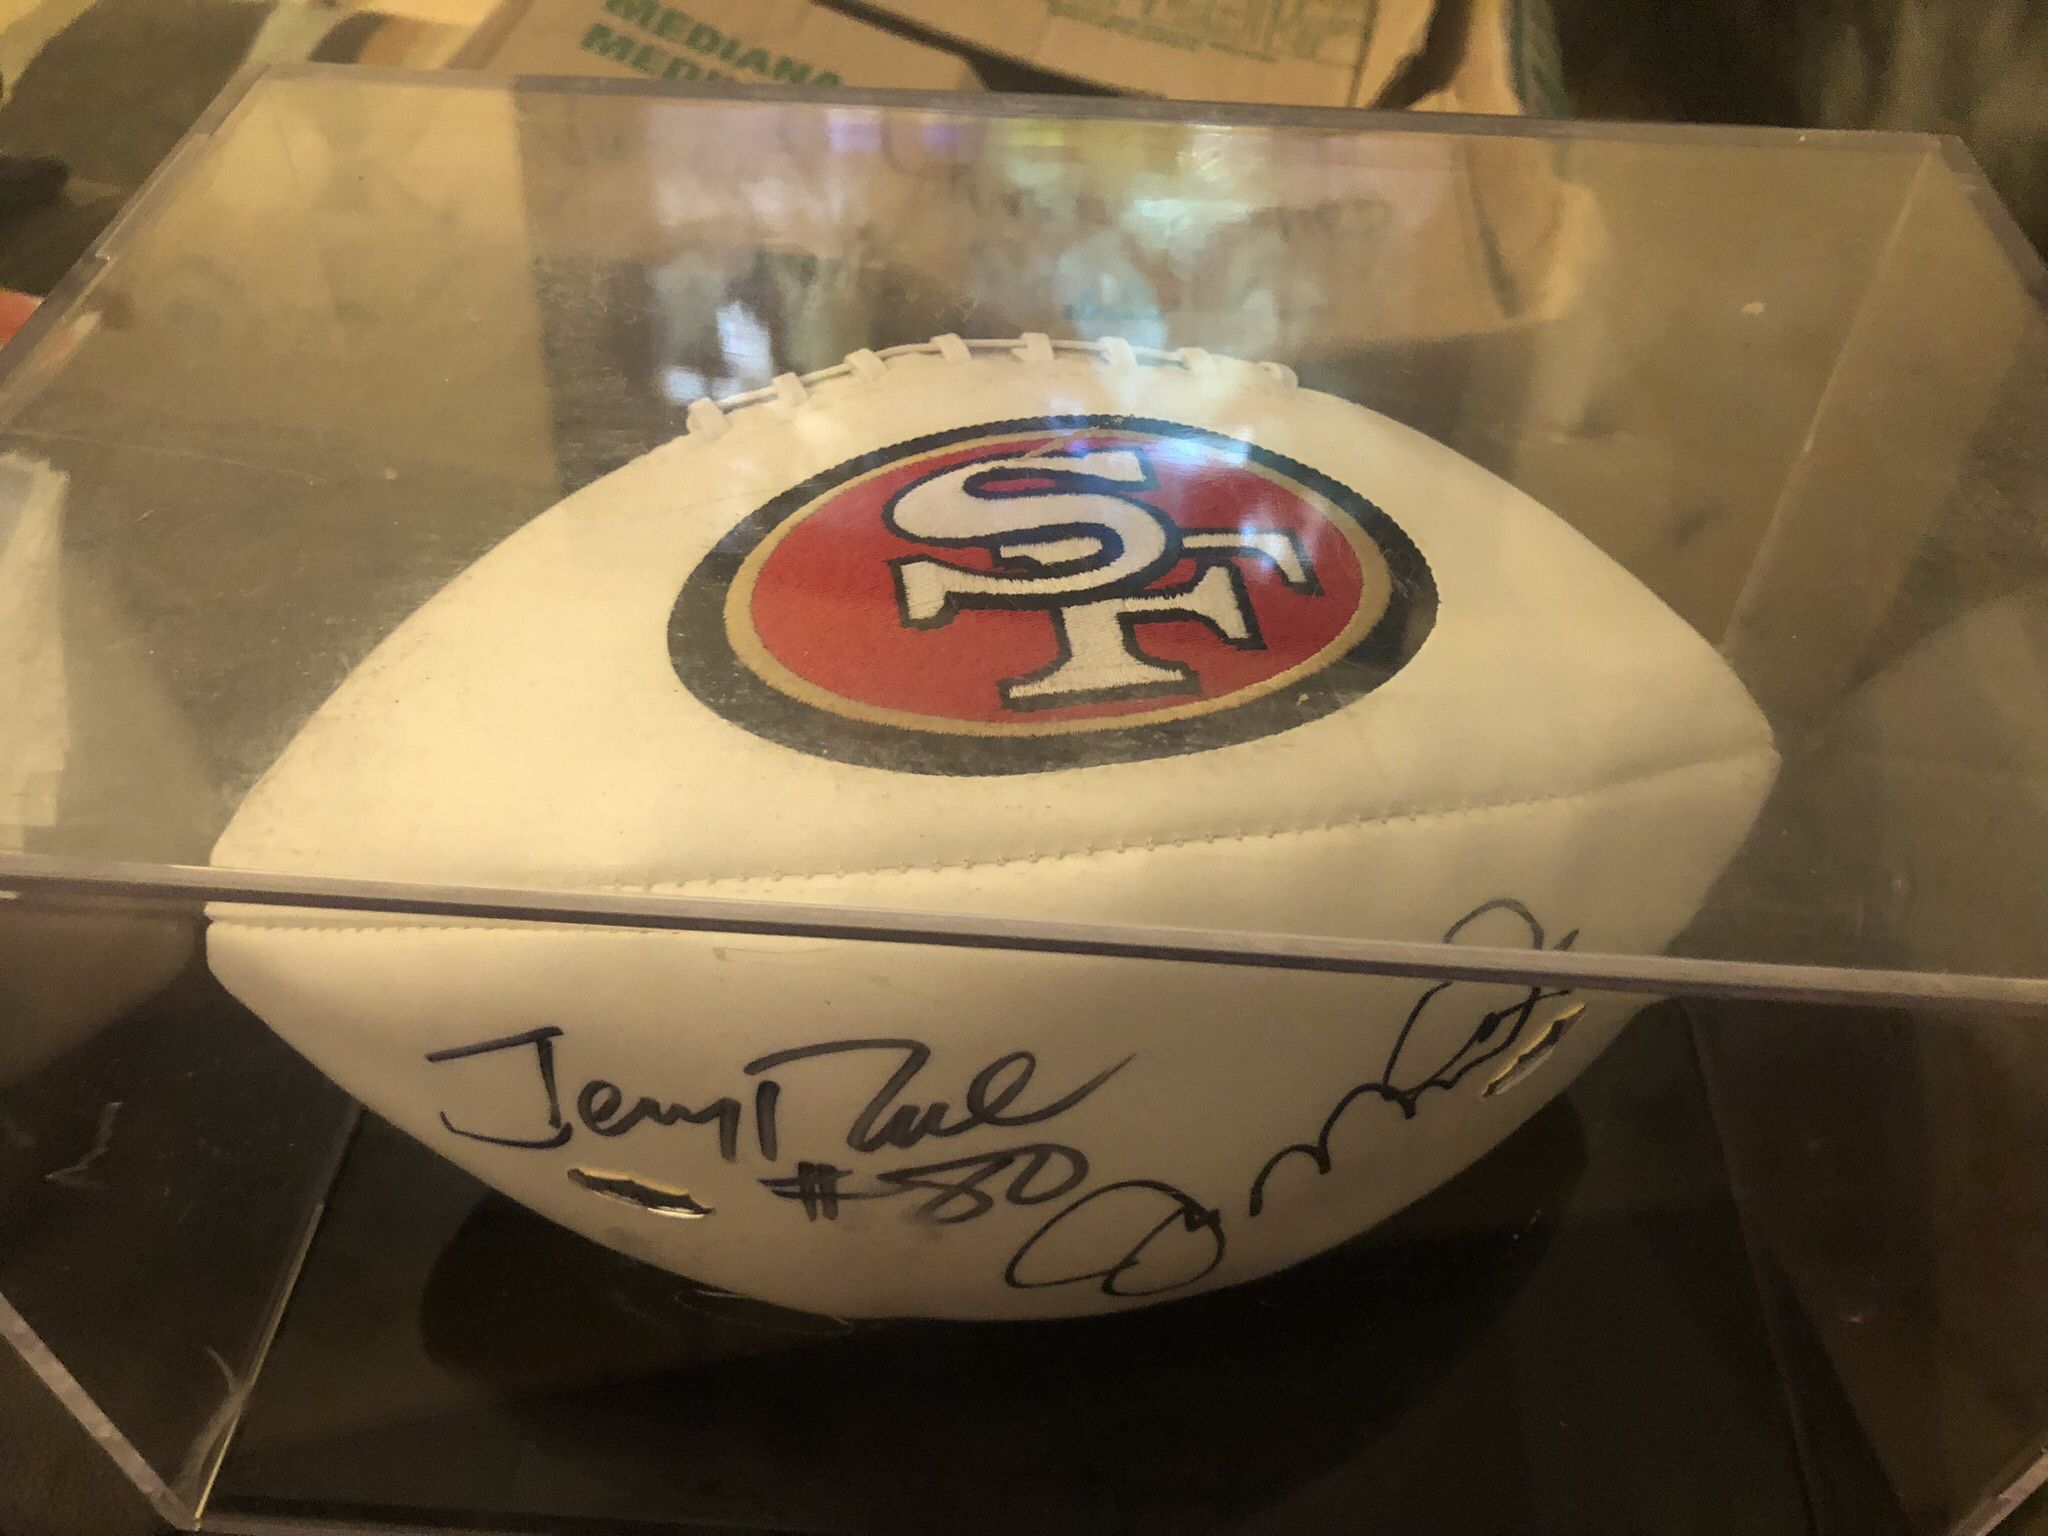 joe montana and jerry rice autographed football